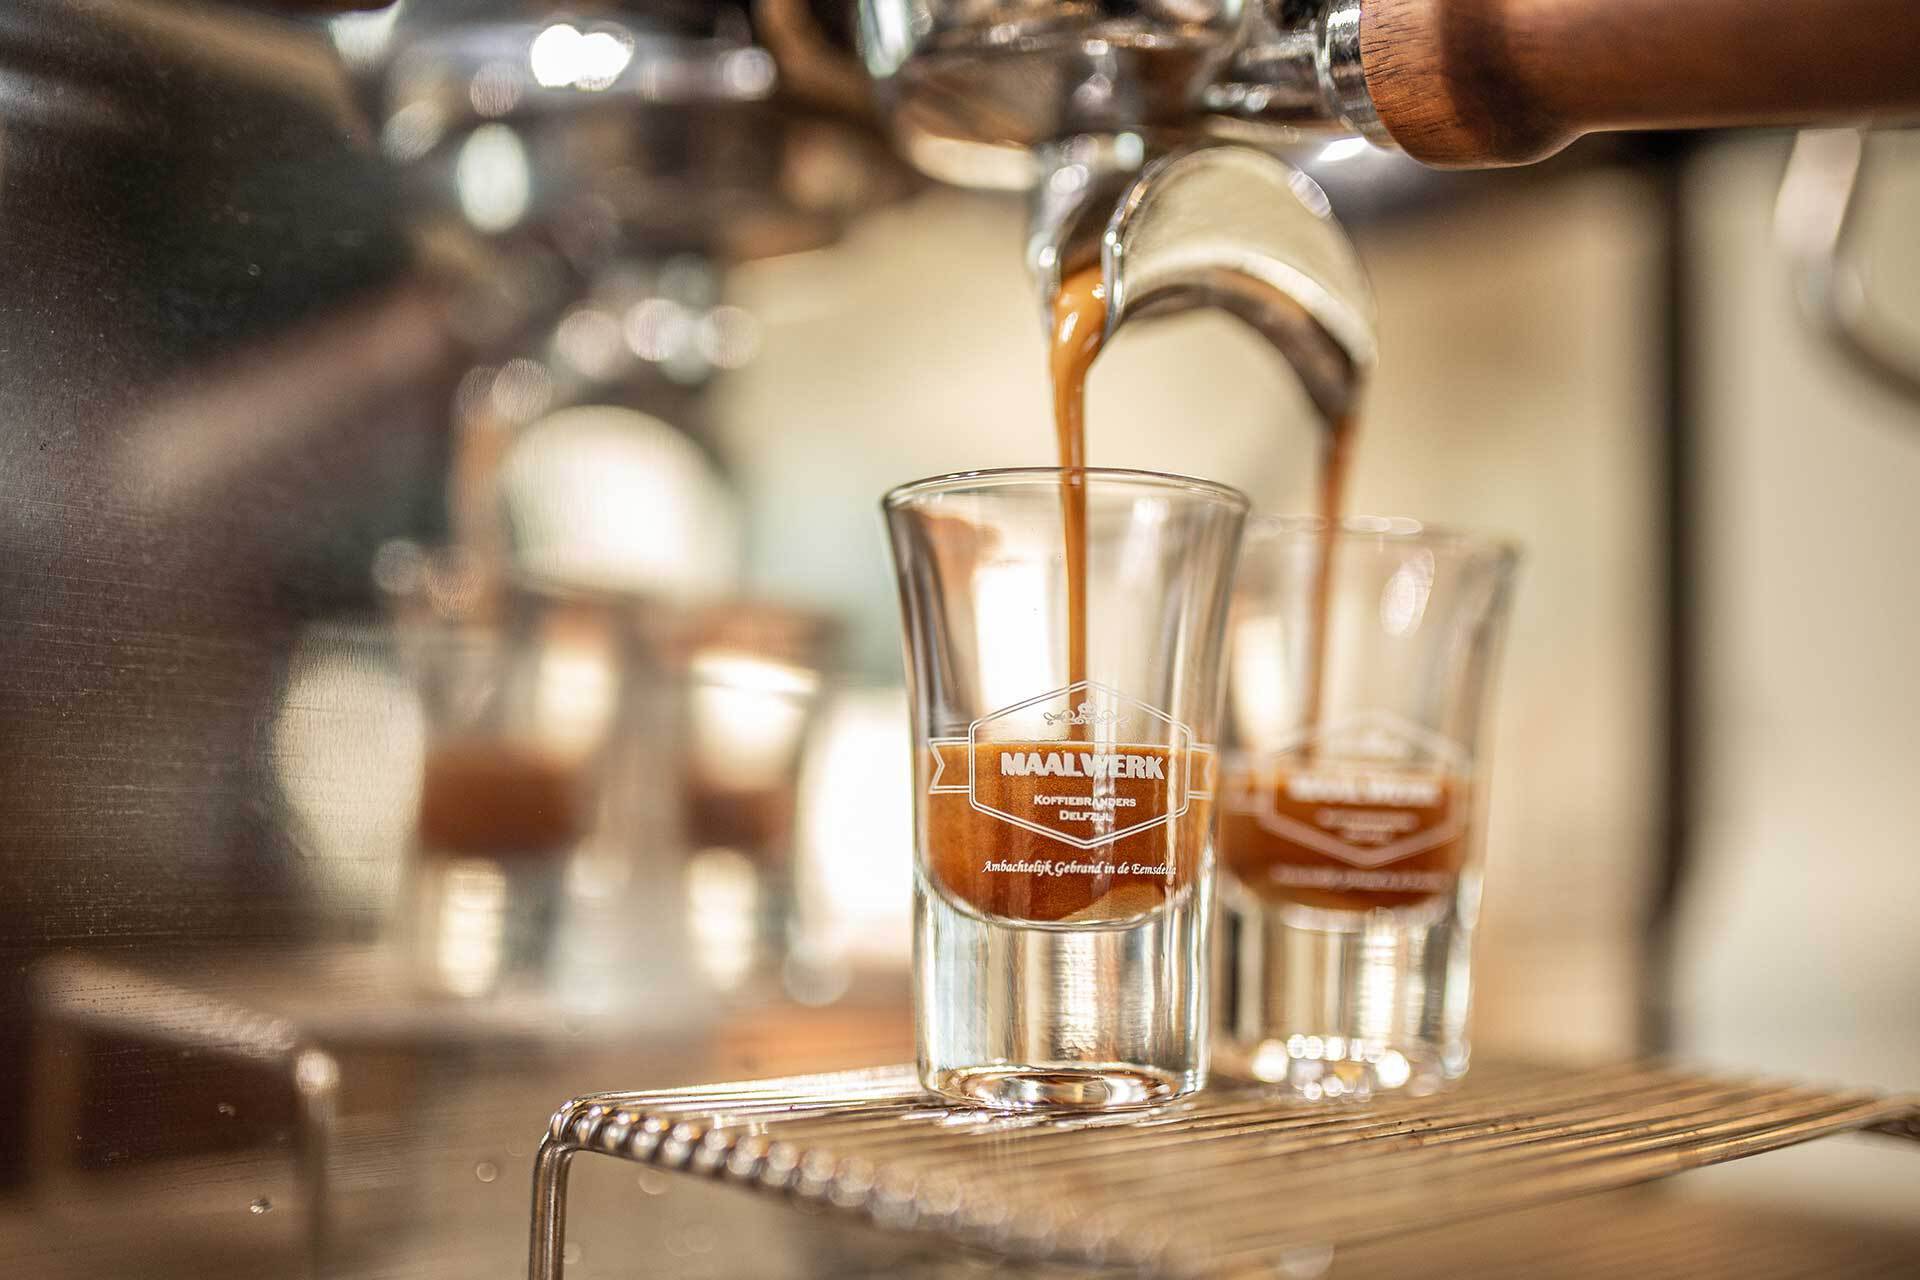 Twee espressoglazen met maalwerk logo onder een barista koffiemachine